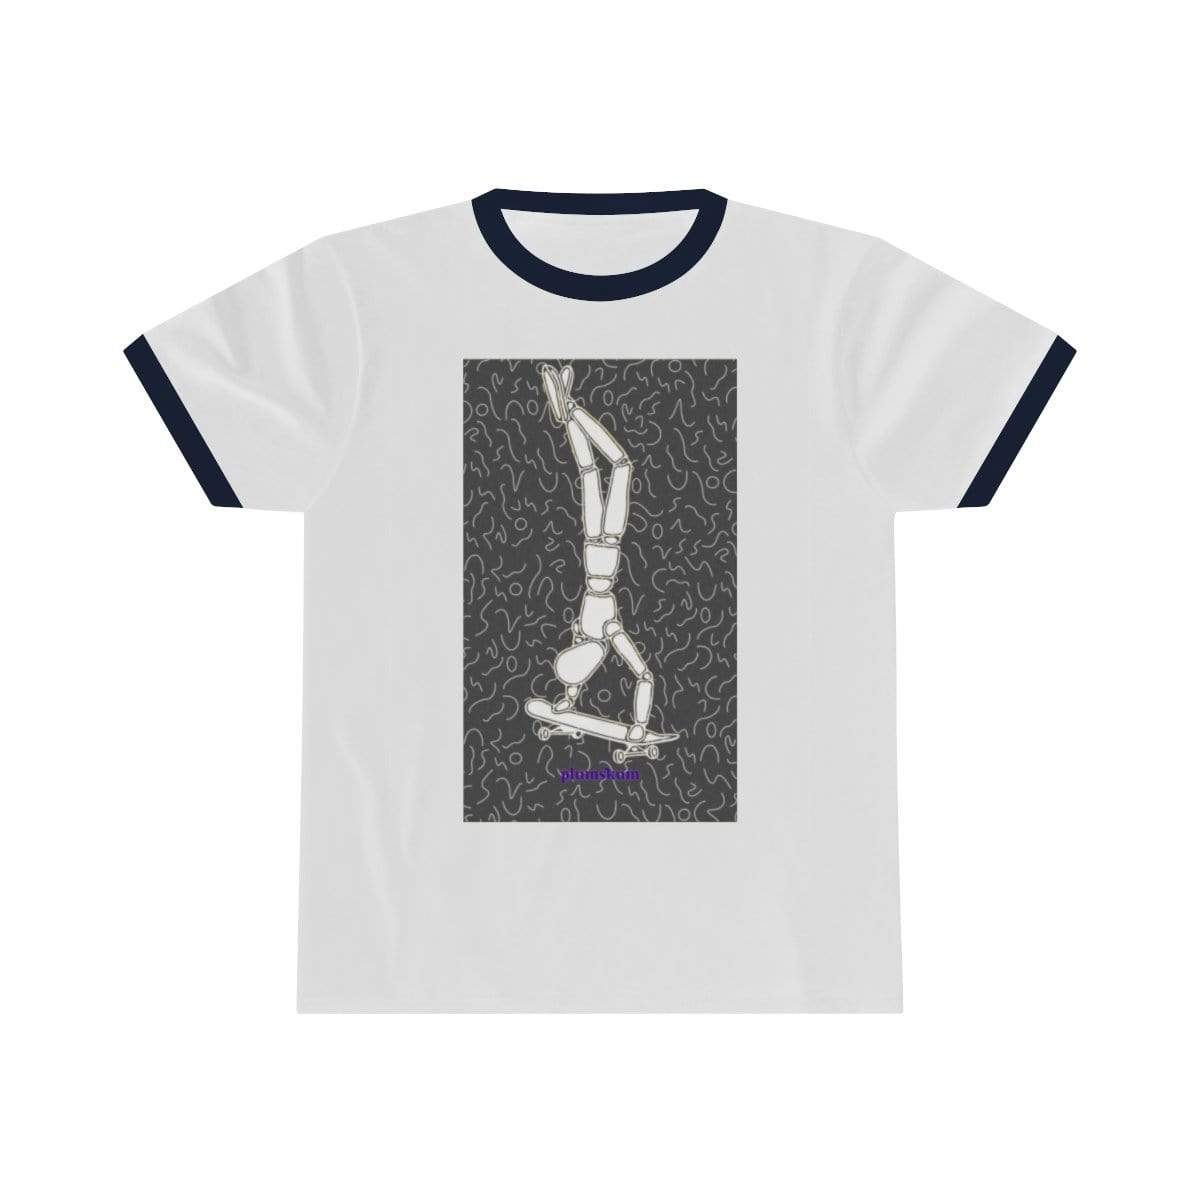 Printify T-Shirt S / White / Navy Plumskum Skater Unisex Ringer Tee